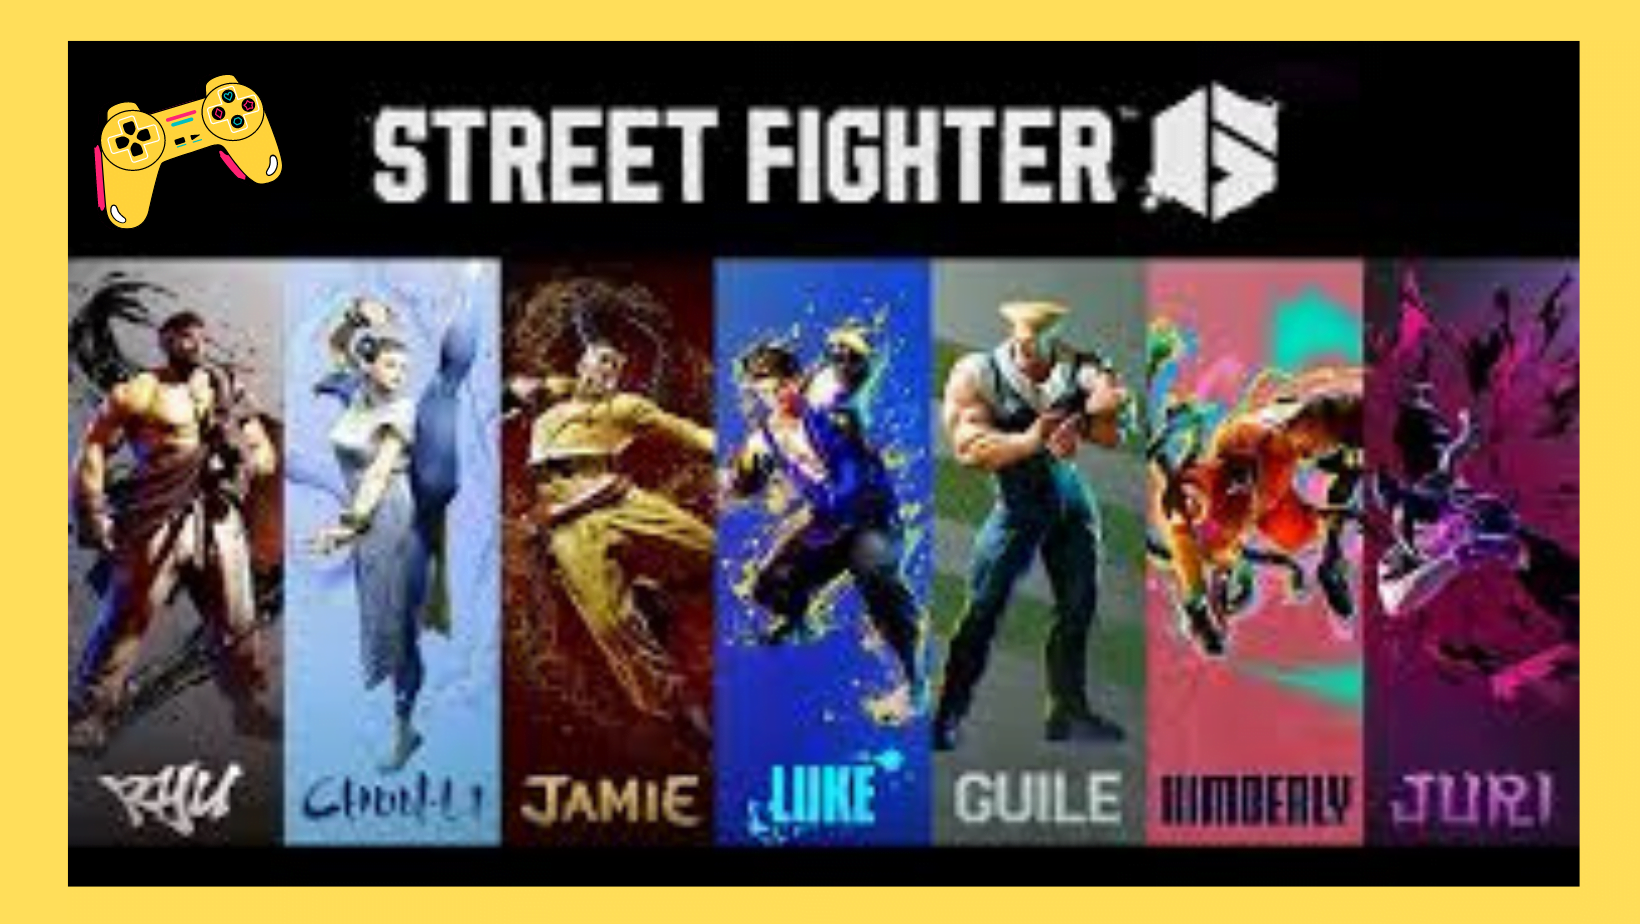 Street Fighter 6 para PC a principal série de jogos de luta entra em uma nova geração